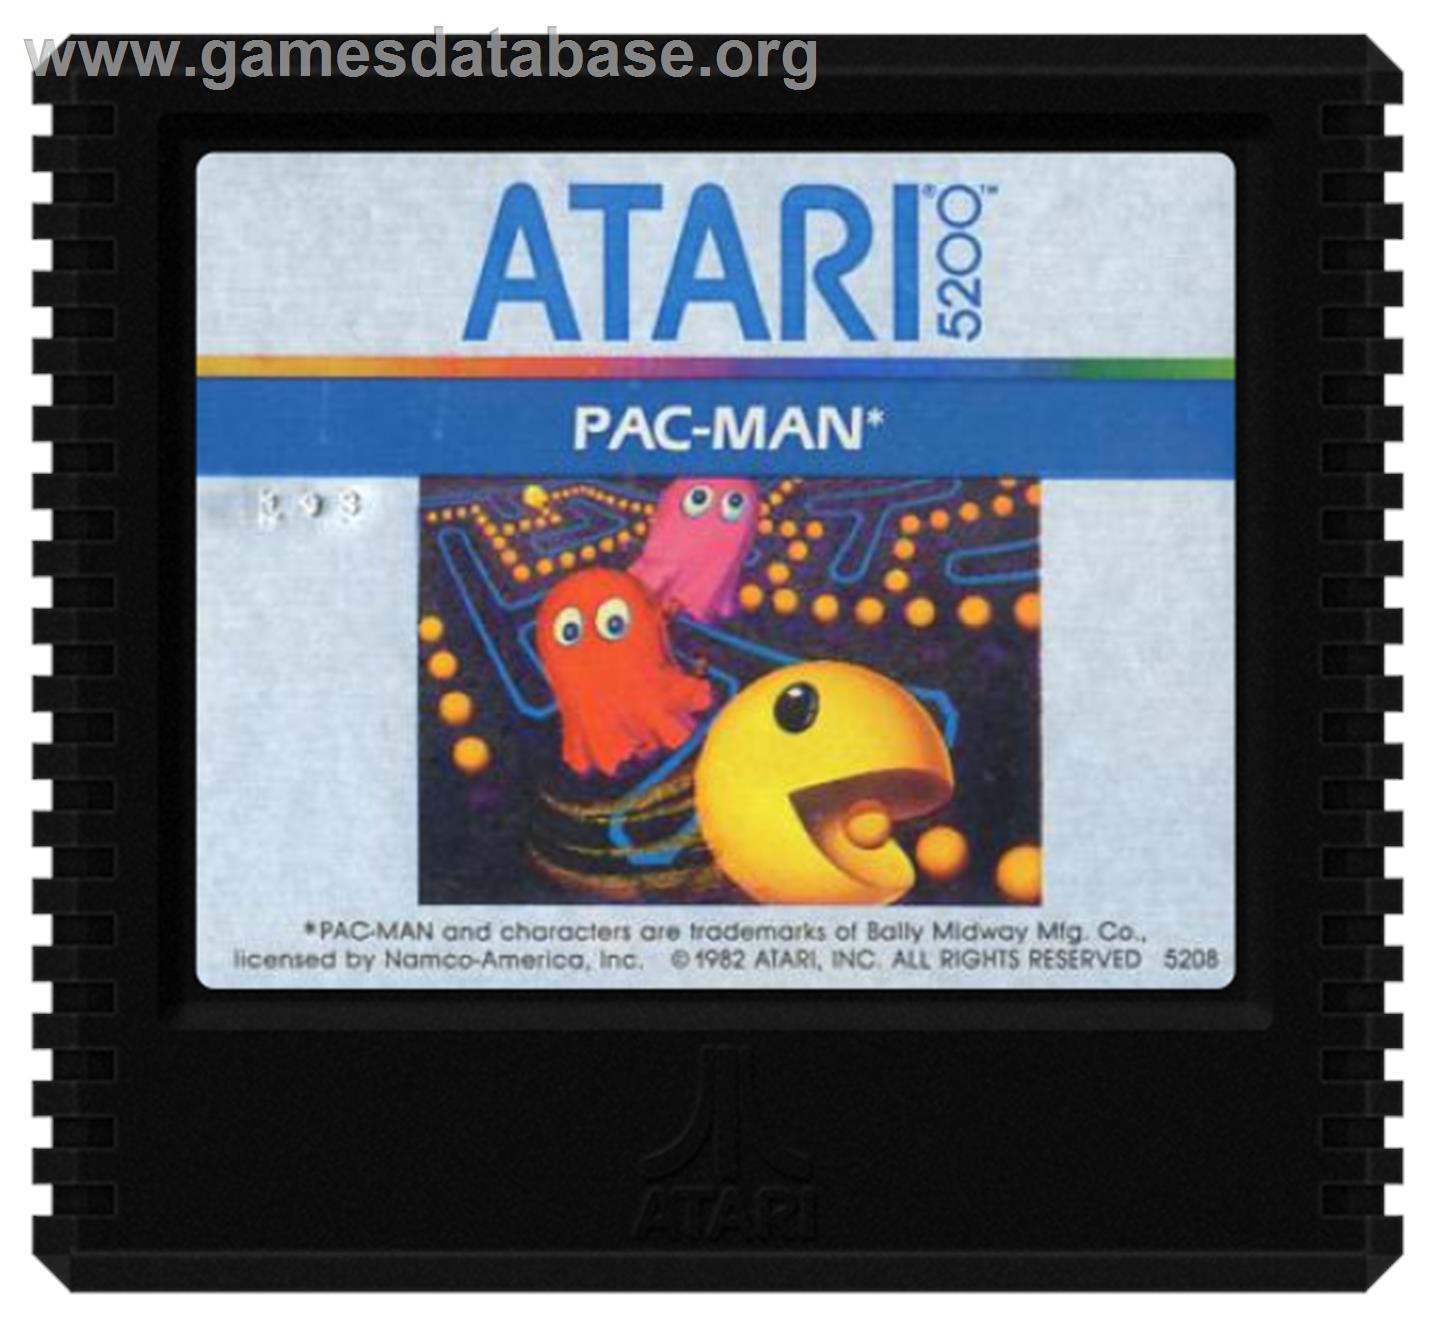 Pac-Man - Atari 5200 - Artwork - Cartridge